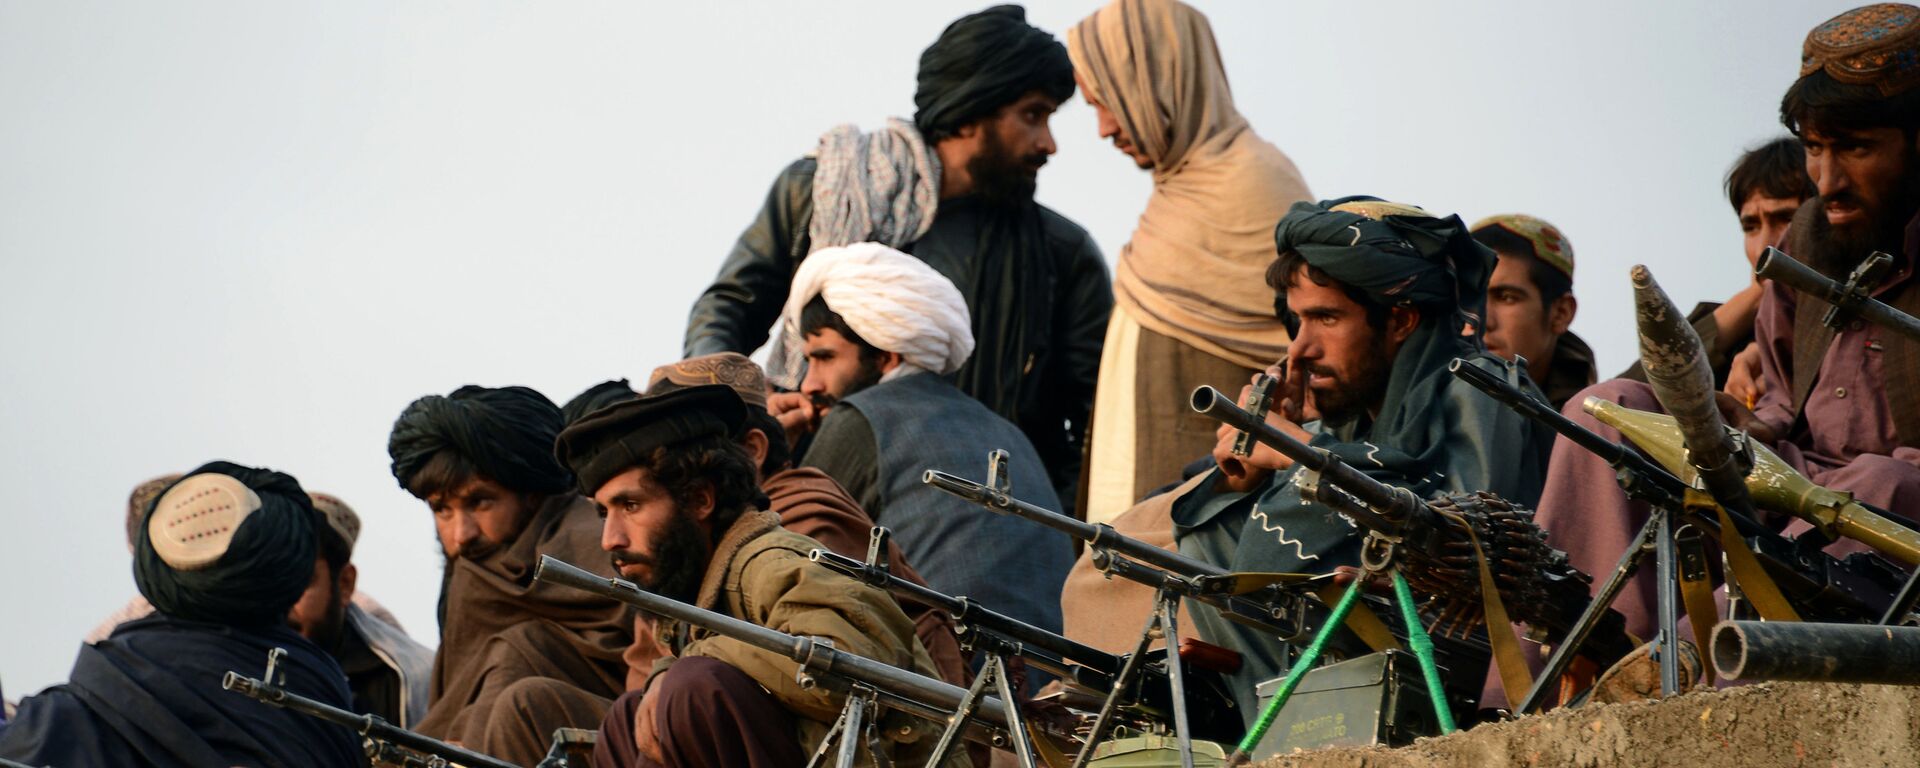 Combatientes de Talibán en Afganistán (archivo) - Sputnik Mundo, 1920, 05.07.2021